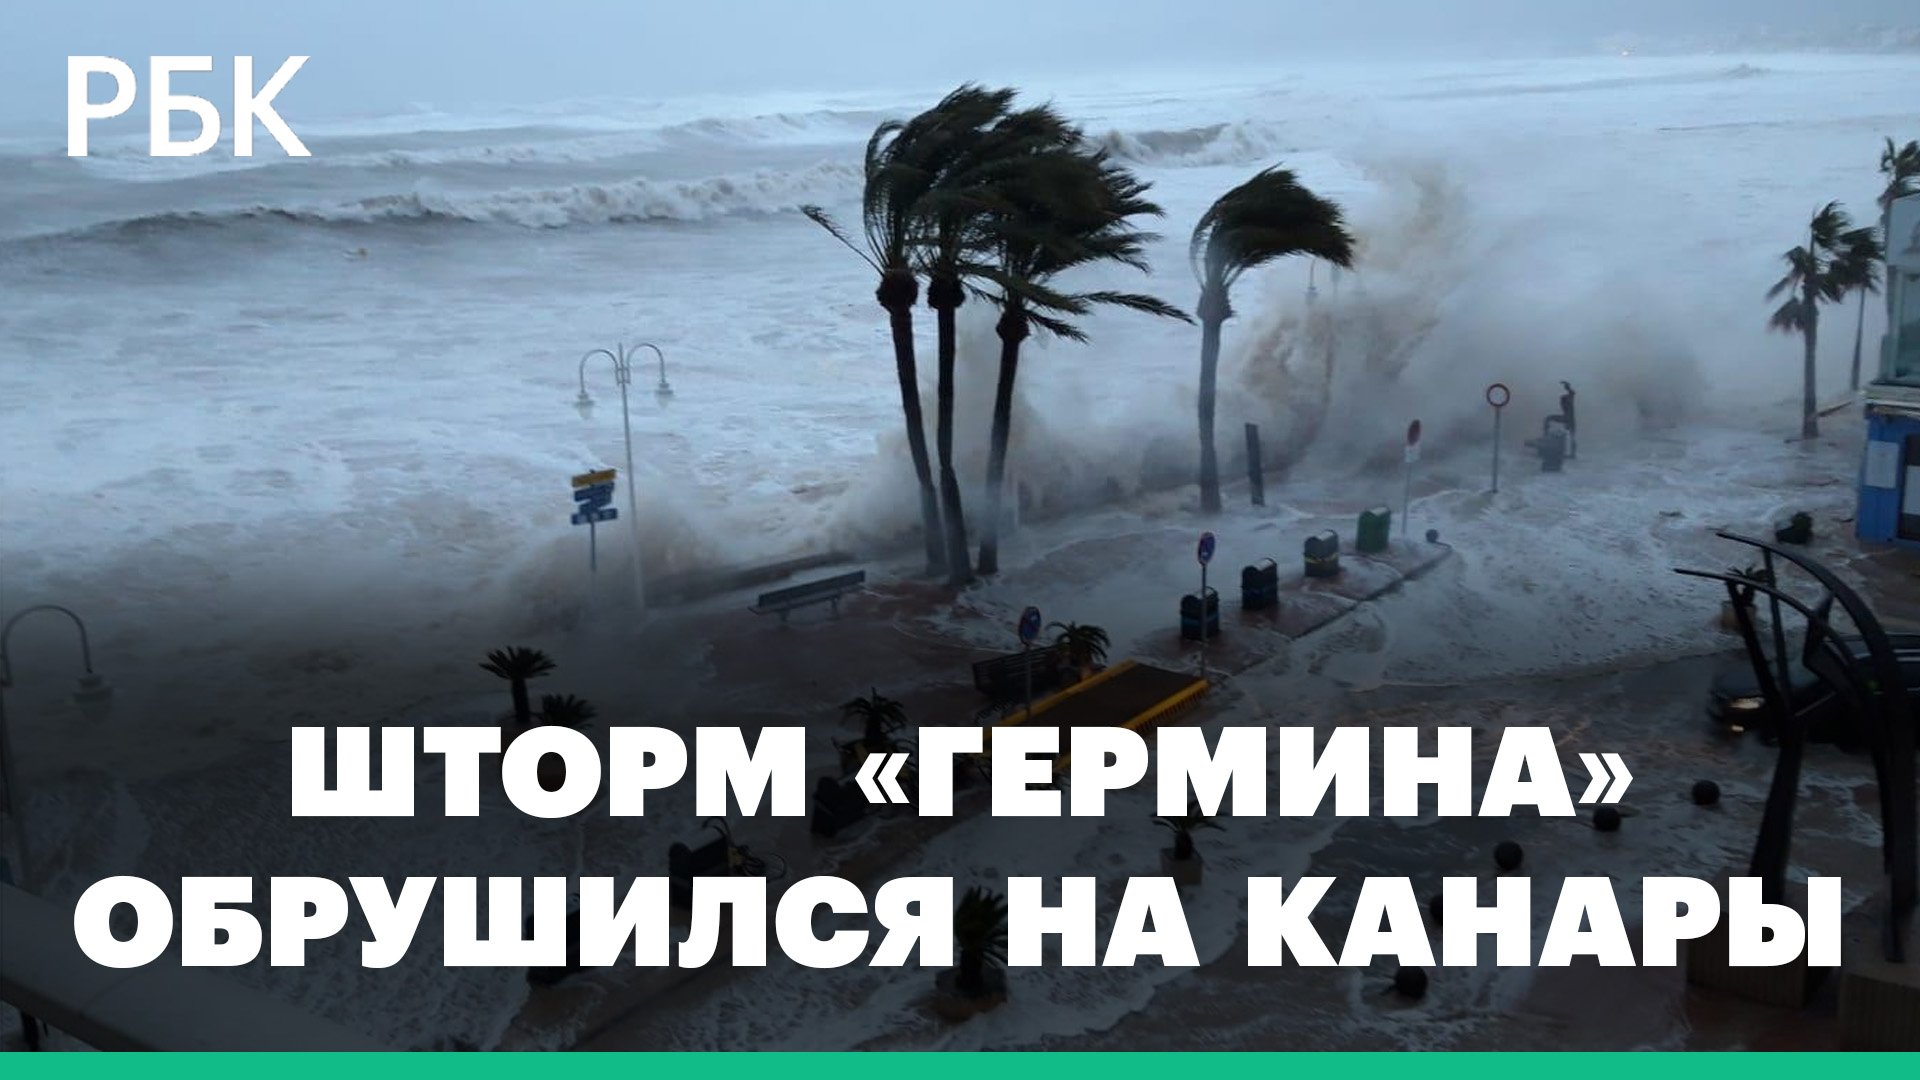 Курорты Канарских островов затопил шторм «Гермина». Отменены сотни авиарейсов: видео